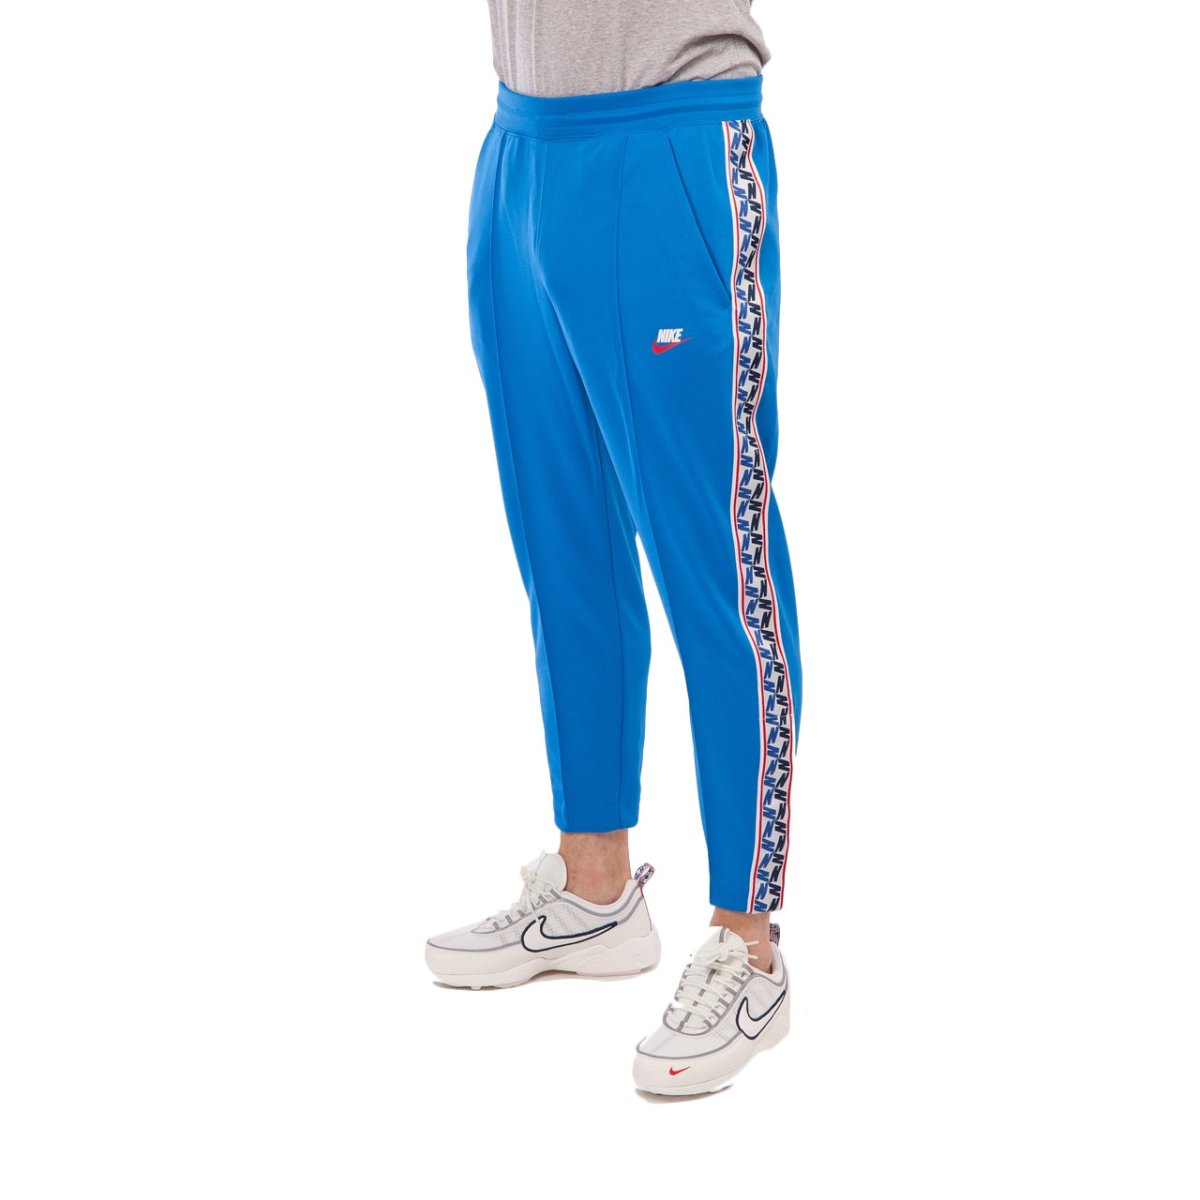 Nike NSW Taped Poly Pants (Blau / Weiß)  - Allike Store